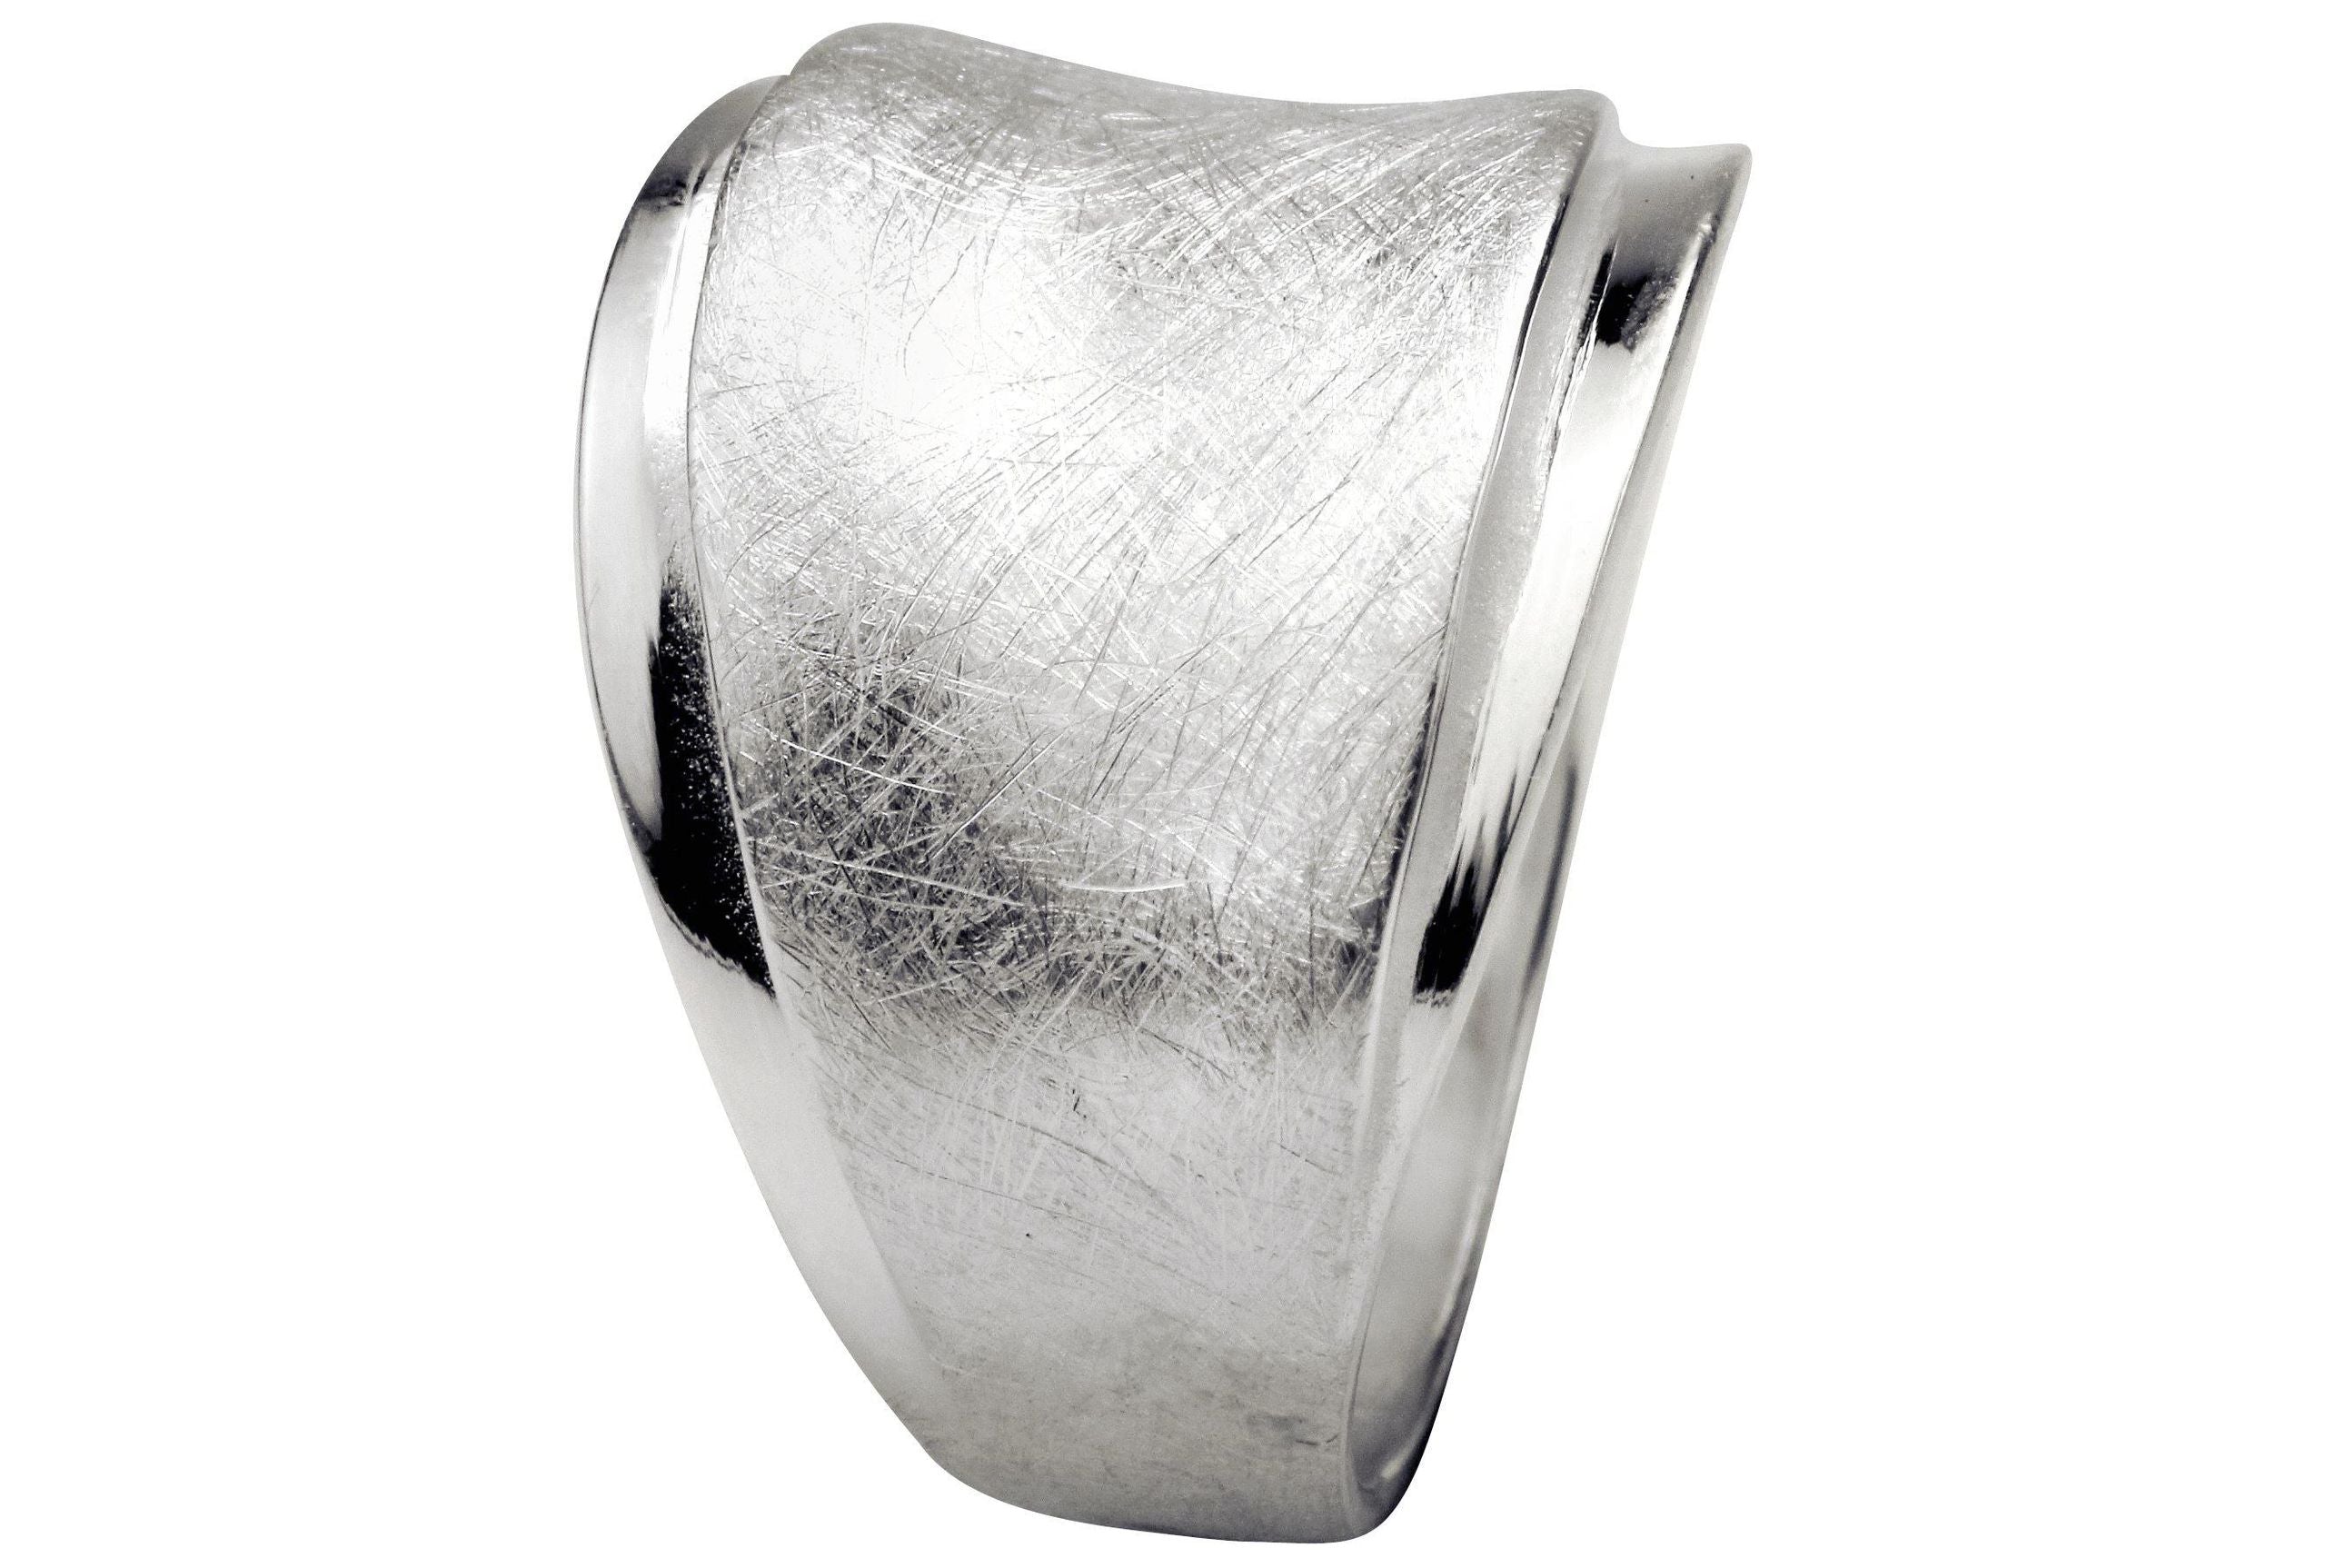 Ein Design Bandring aus Silber, bei dem ein mattierter und ein glänzender Ring gestuft übereinander liegen.